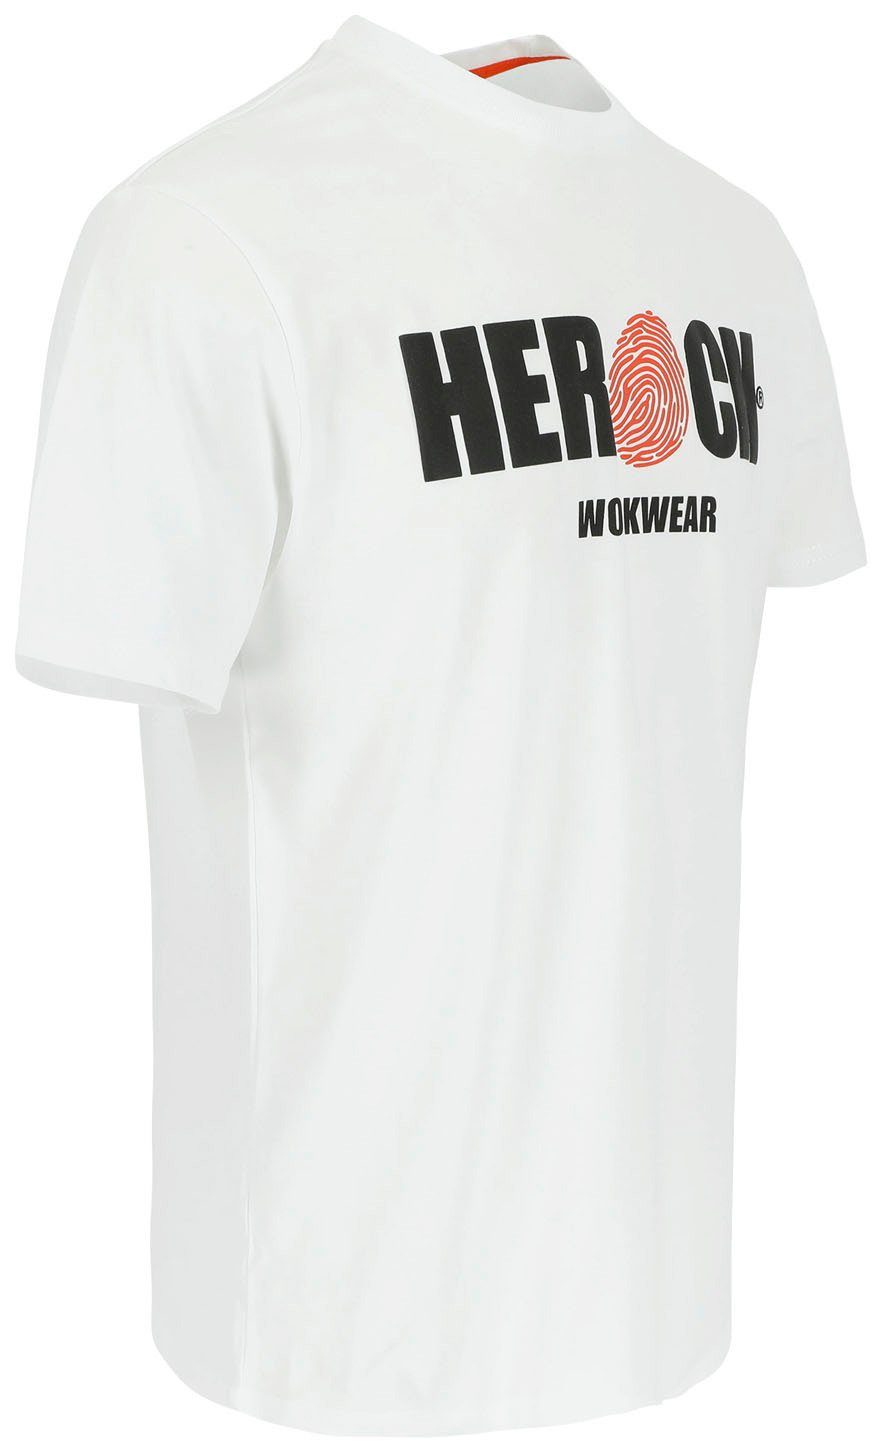 Rundhals, Herock Baumwolle, angenehmes Tragegefühl ENI mit weiß Herock®-Aufdruck, T-Shirt